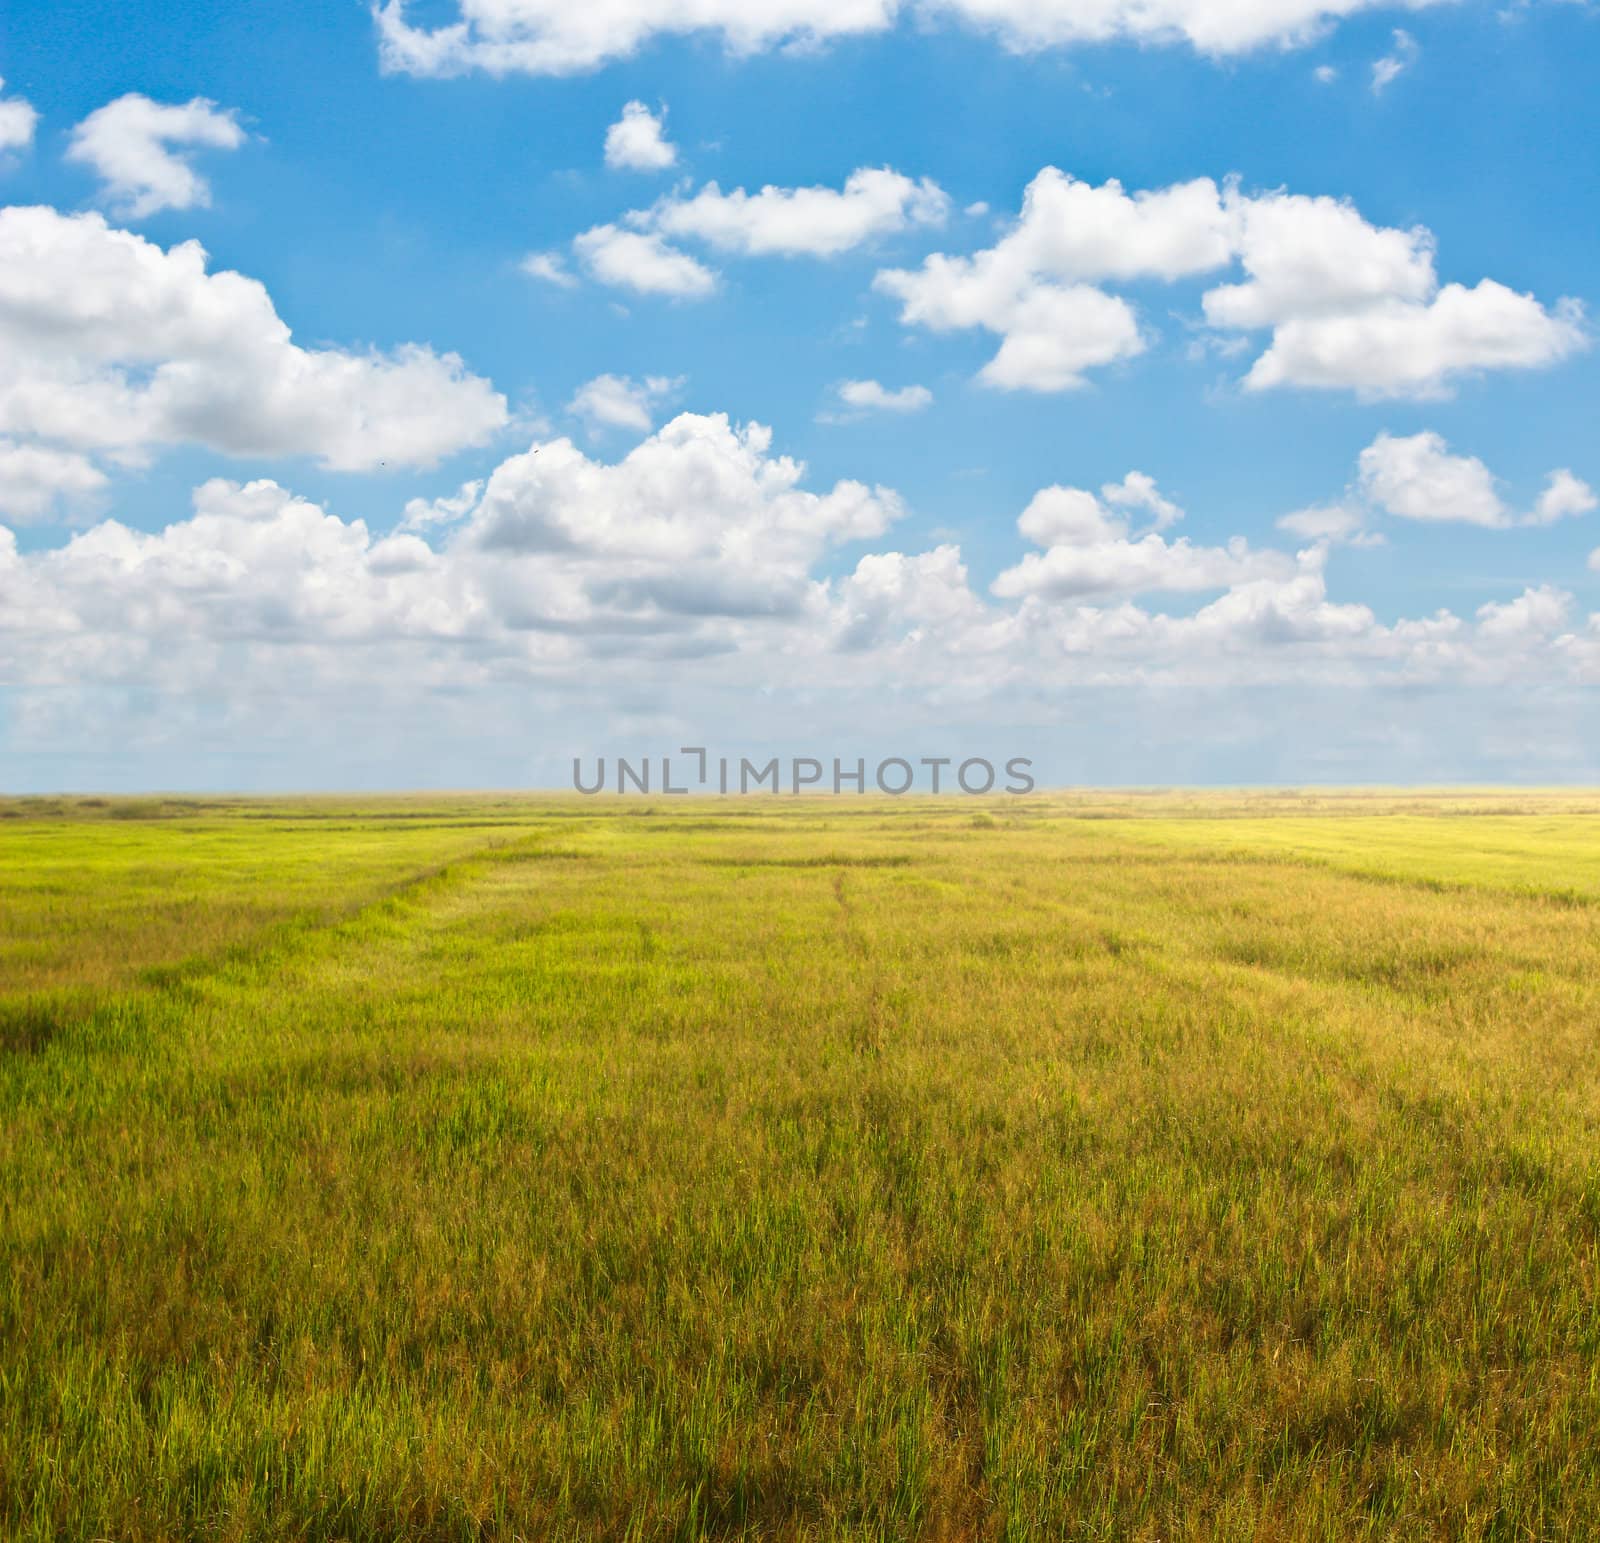 addy field with beautiful blue sky by bajita111122